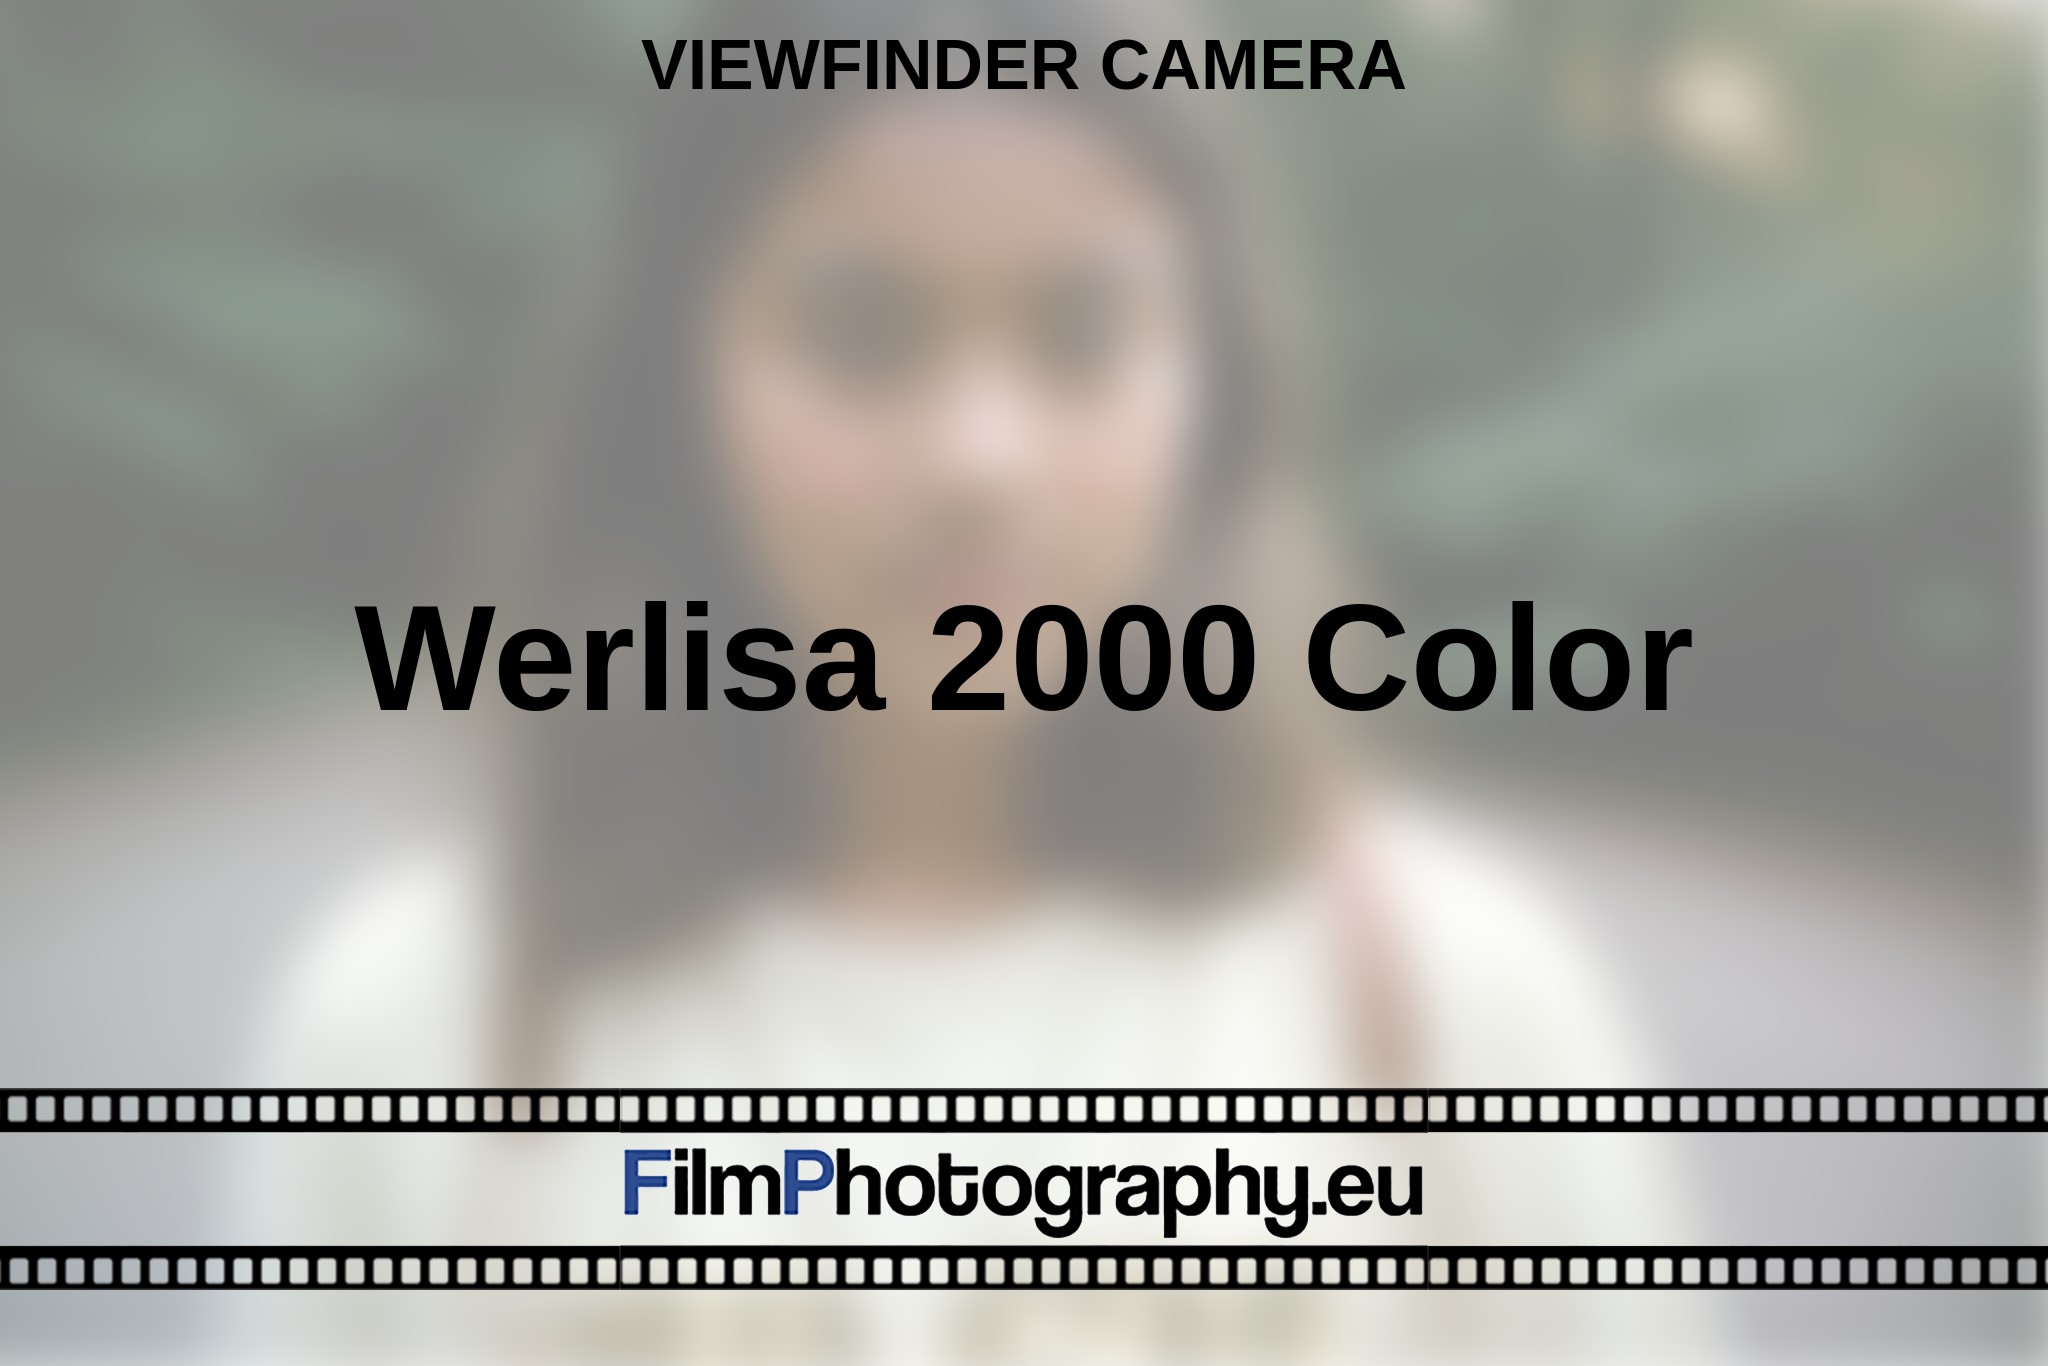 werlisa-2000-color-viewfinder-camera-en-bnv.jpg